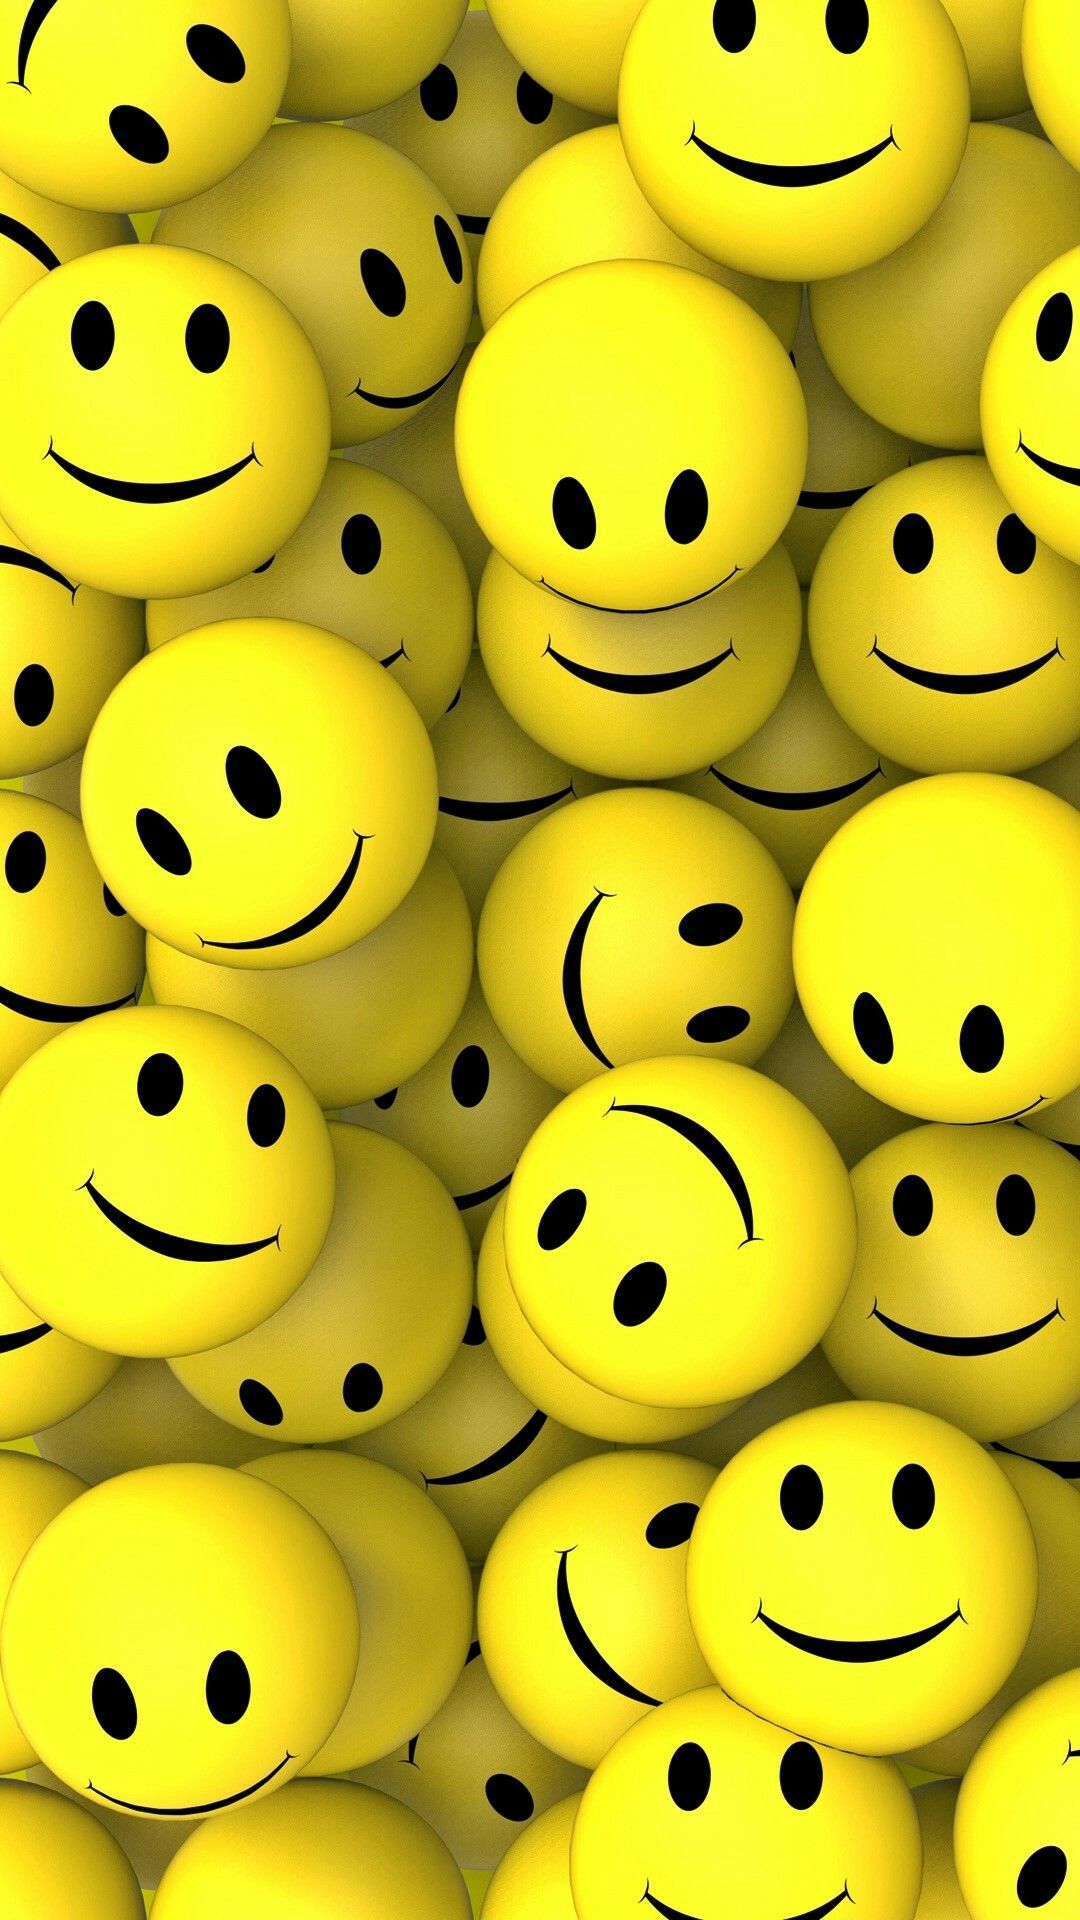 Free download 3D SMILEY LOGOS in 2019 Emoji wallpaper Smile ...